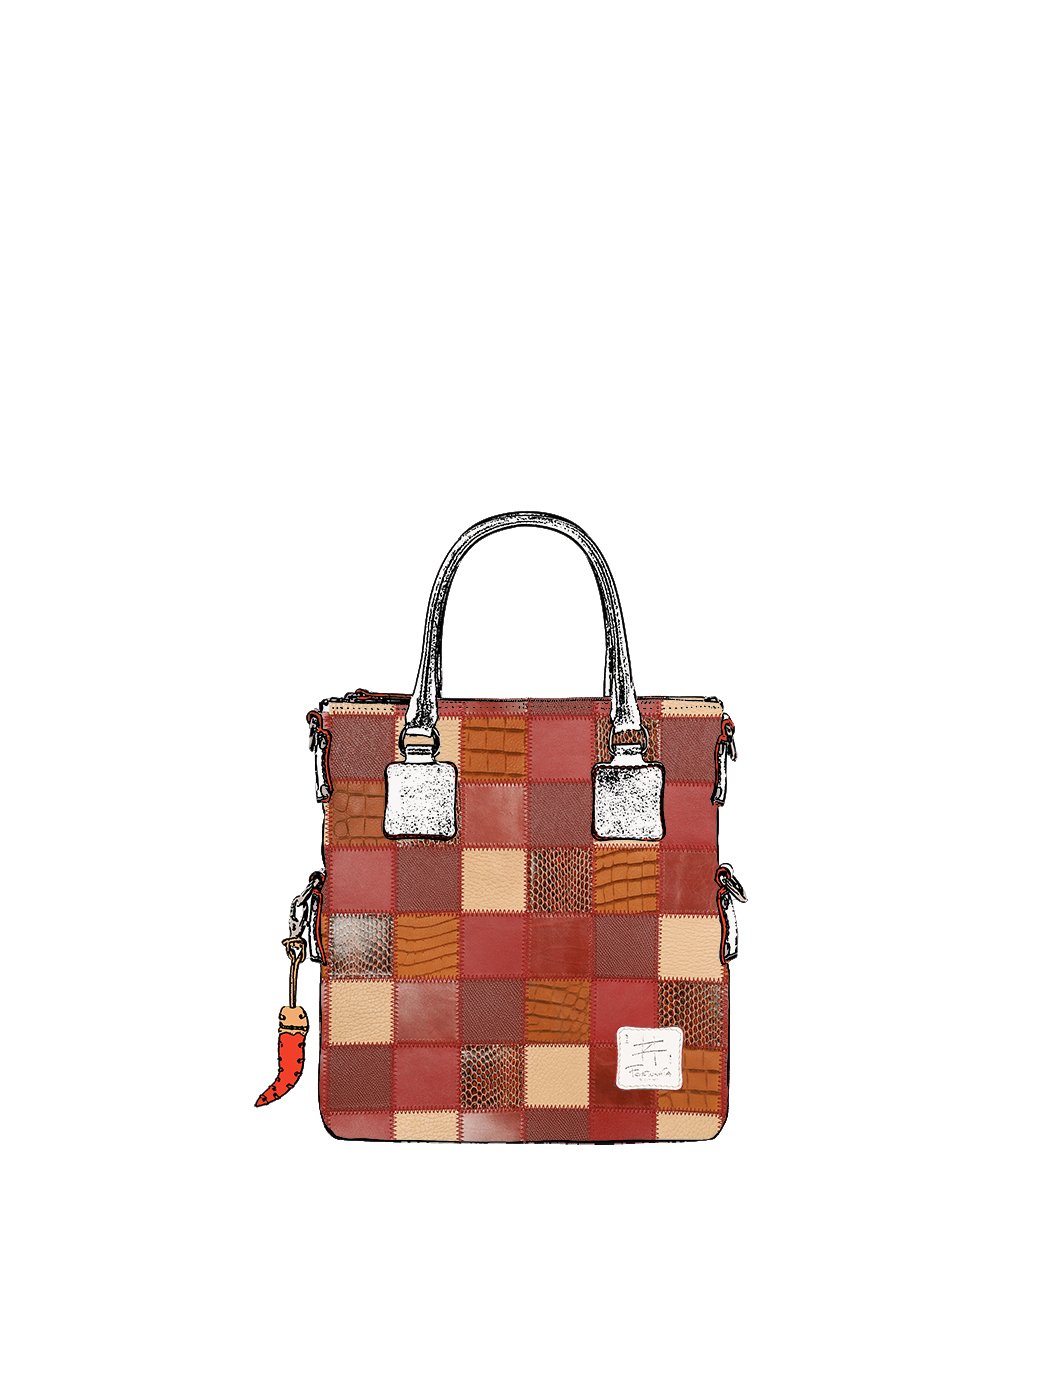 Дизайнерская мини - сумка из коллекции Fortunata в стиле пэчворк бордово - коричневого цвета